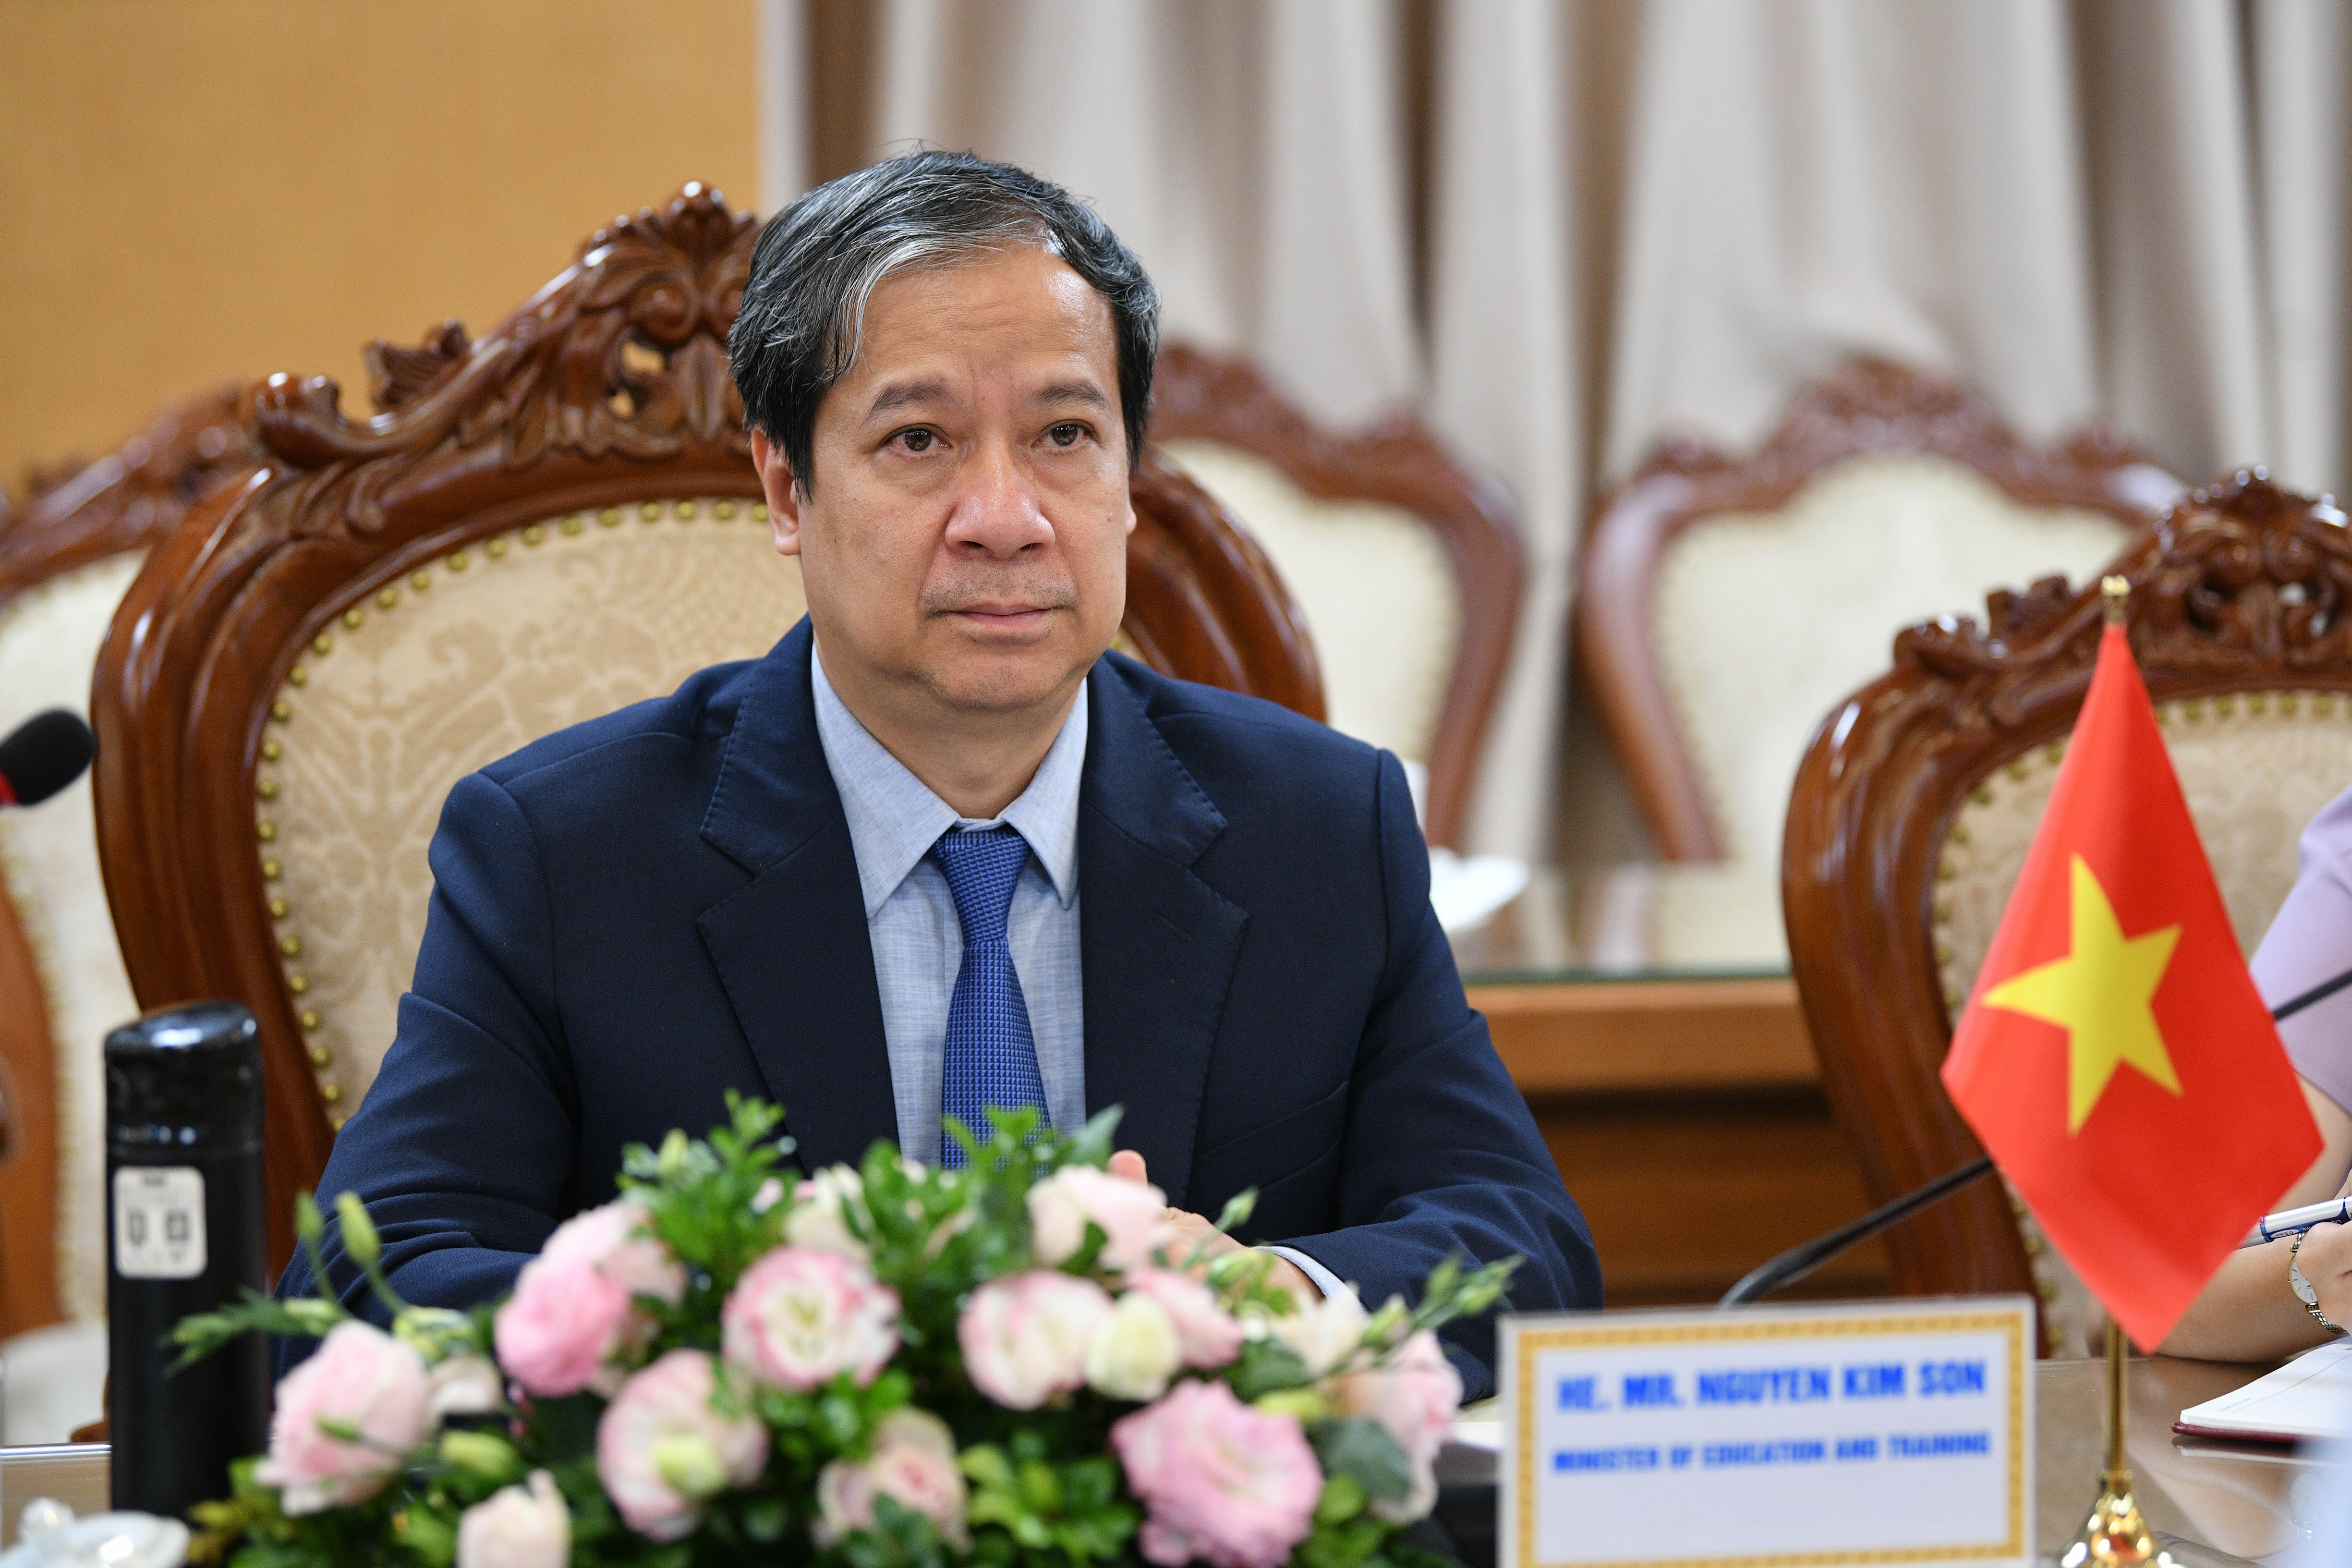 Bộ trưởng Bộ GD&ĐT Nguyễn Kim Sơn phát biểu tại buổi tiếp ông Shevtsov Pavel Anatolievich – Phó Giám đốc Cơ quan hợp tác Liên bang Nga.